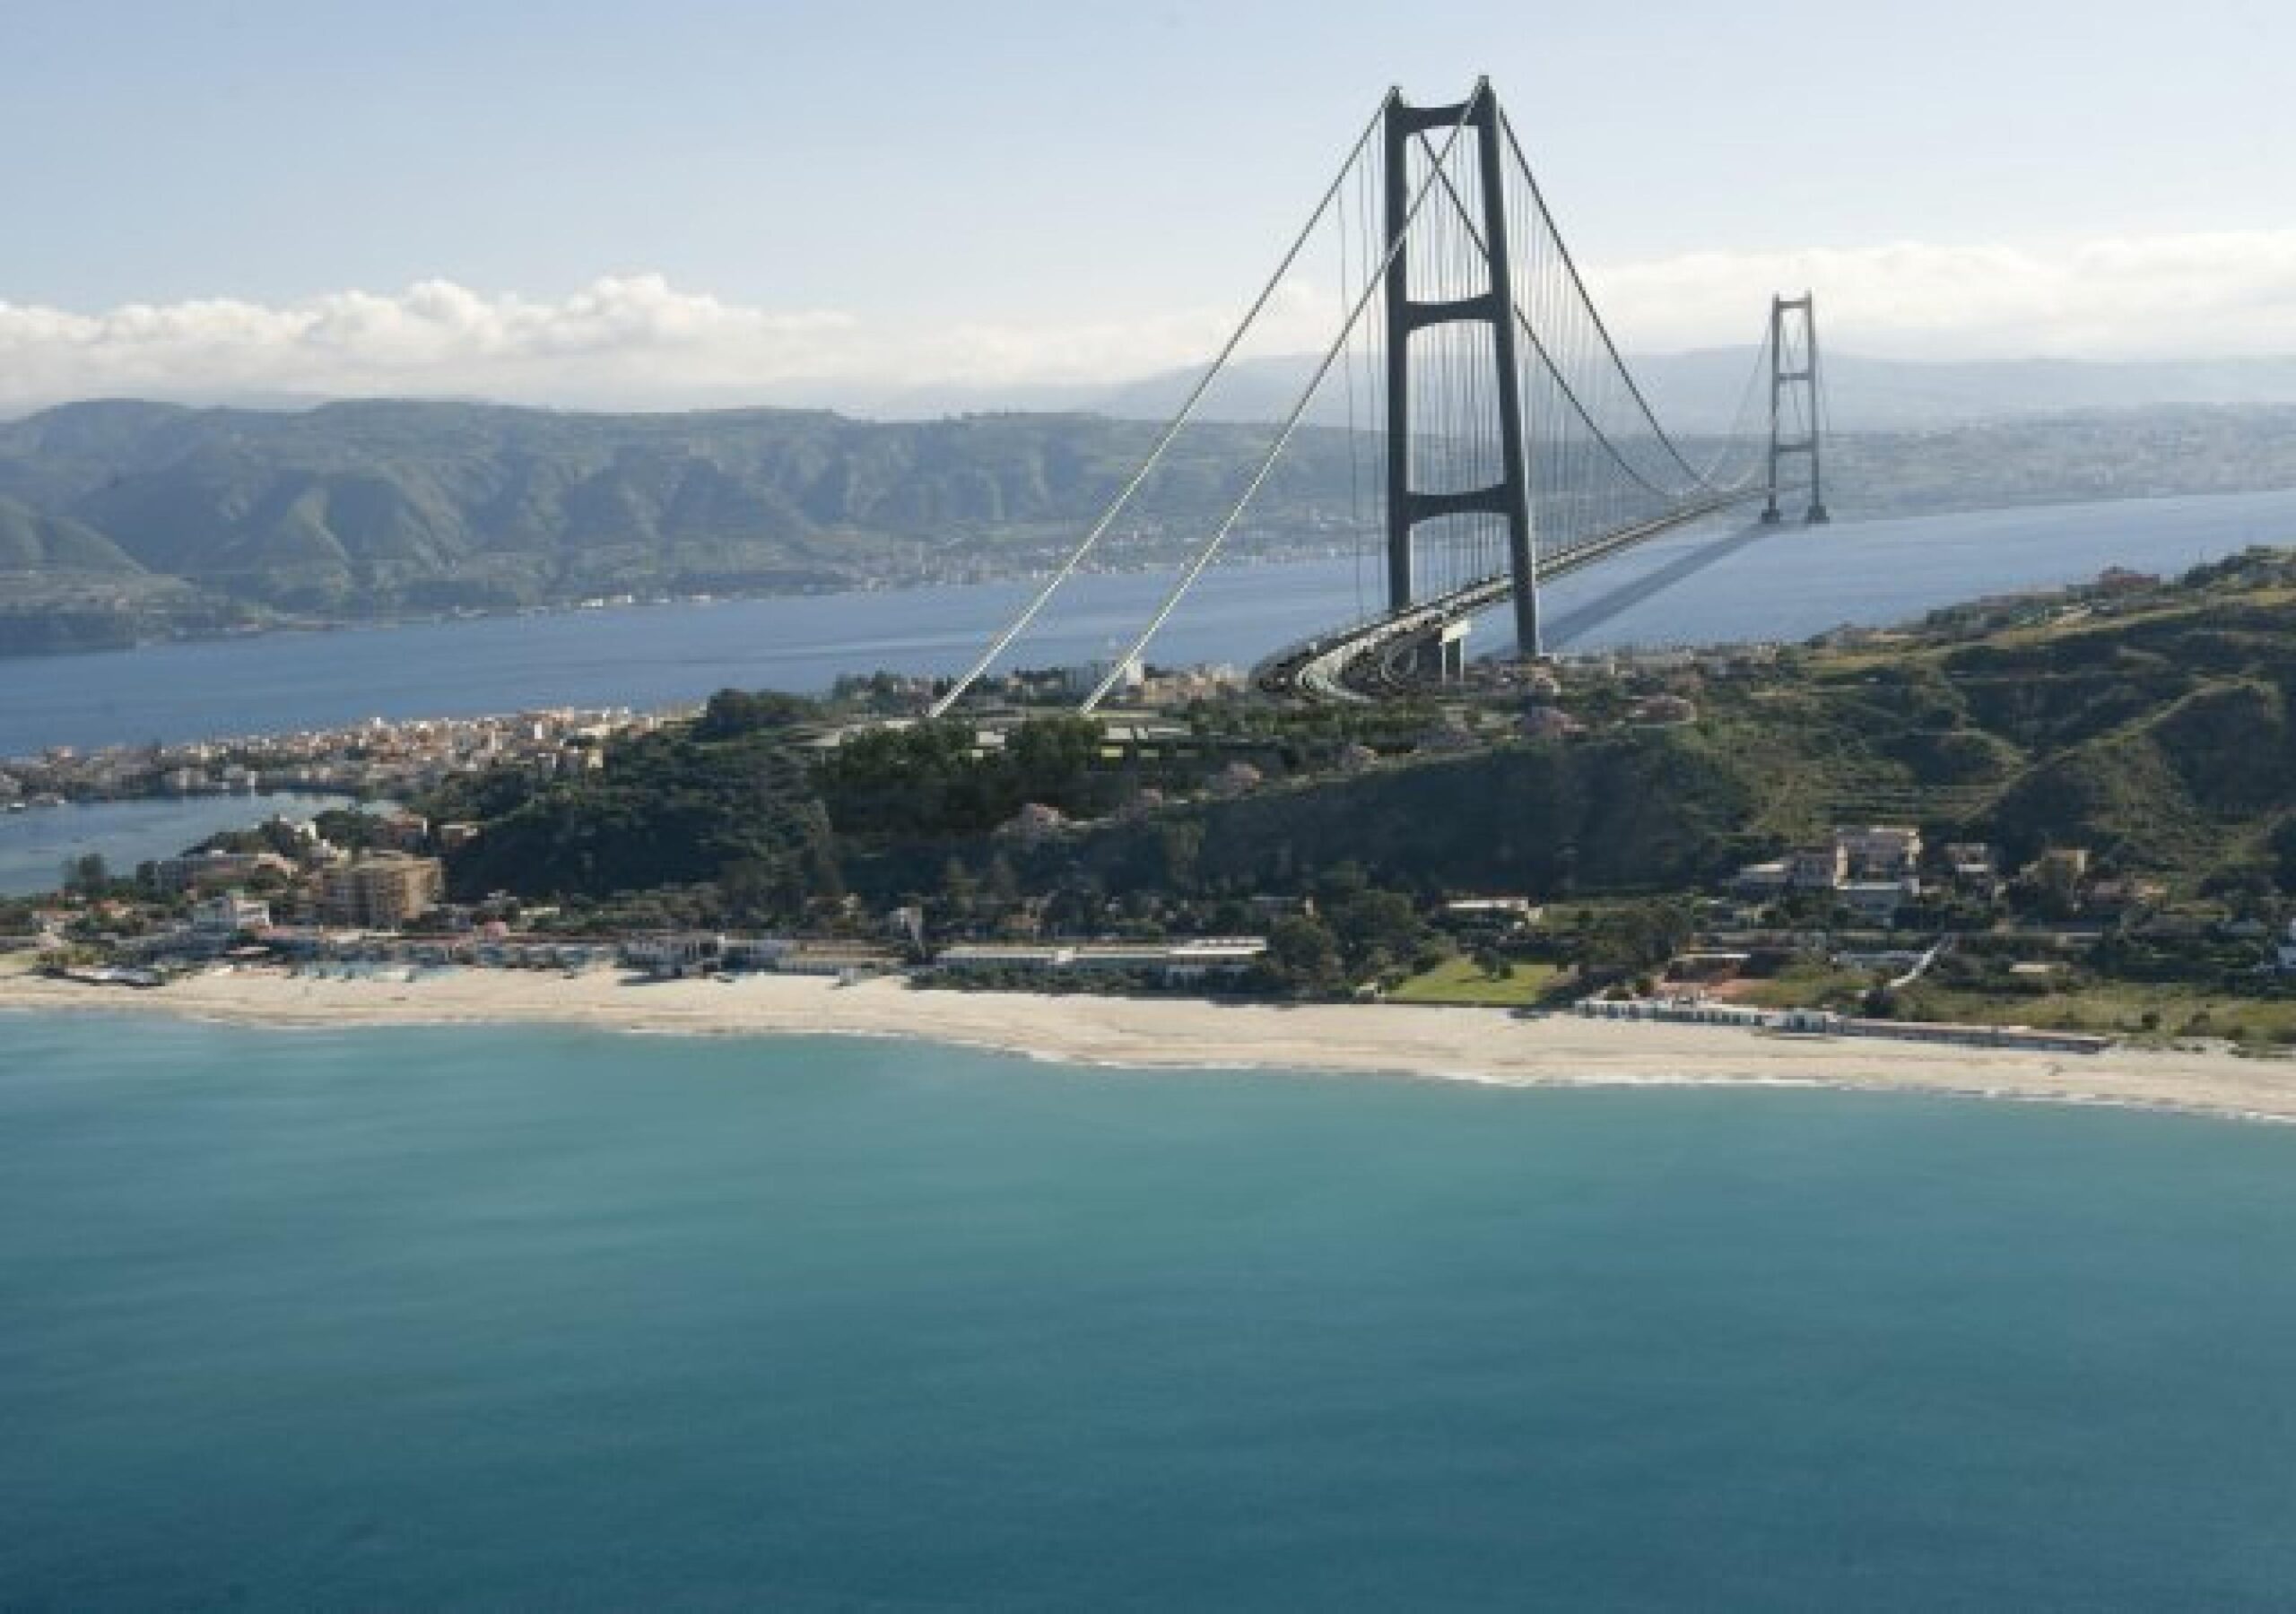 Una elaborazione grafica del progetto definitivo del ponte sullo Stretto di Messina, tratto dal sito www.projectmate.com. ANSA/INTERNET-WWW.PROJECTMATE.COM
+++EDITORIAL USE ONLY - NO SALES+++